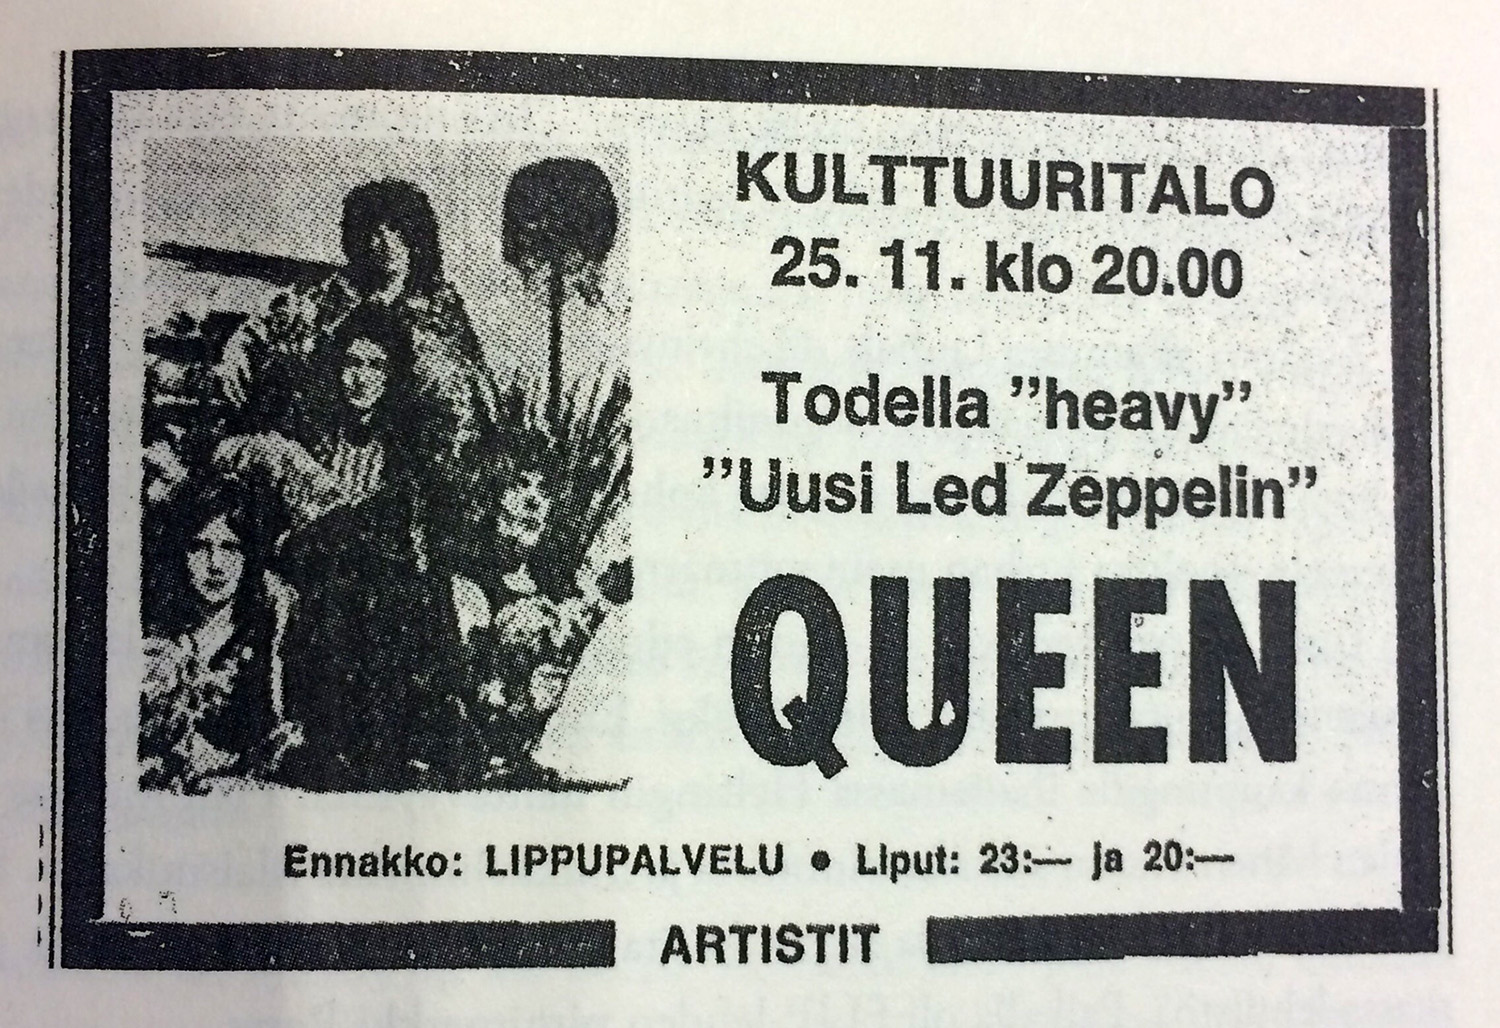 Queen in Helsinki on 25.11.1974